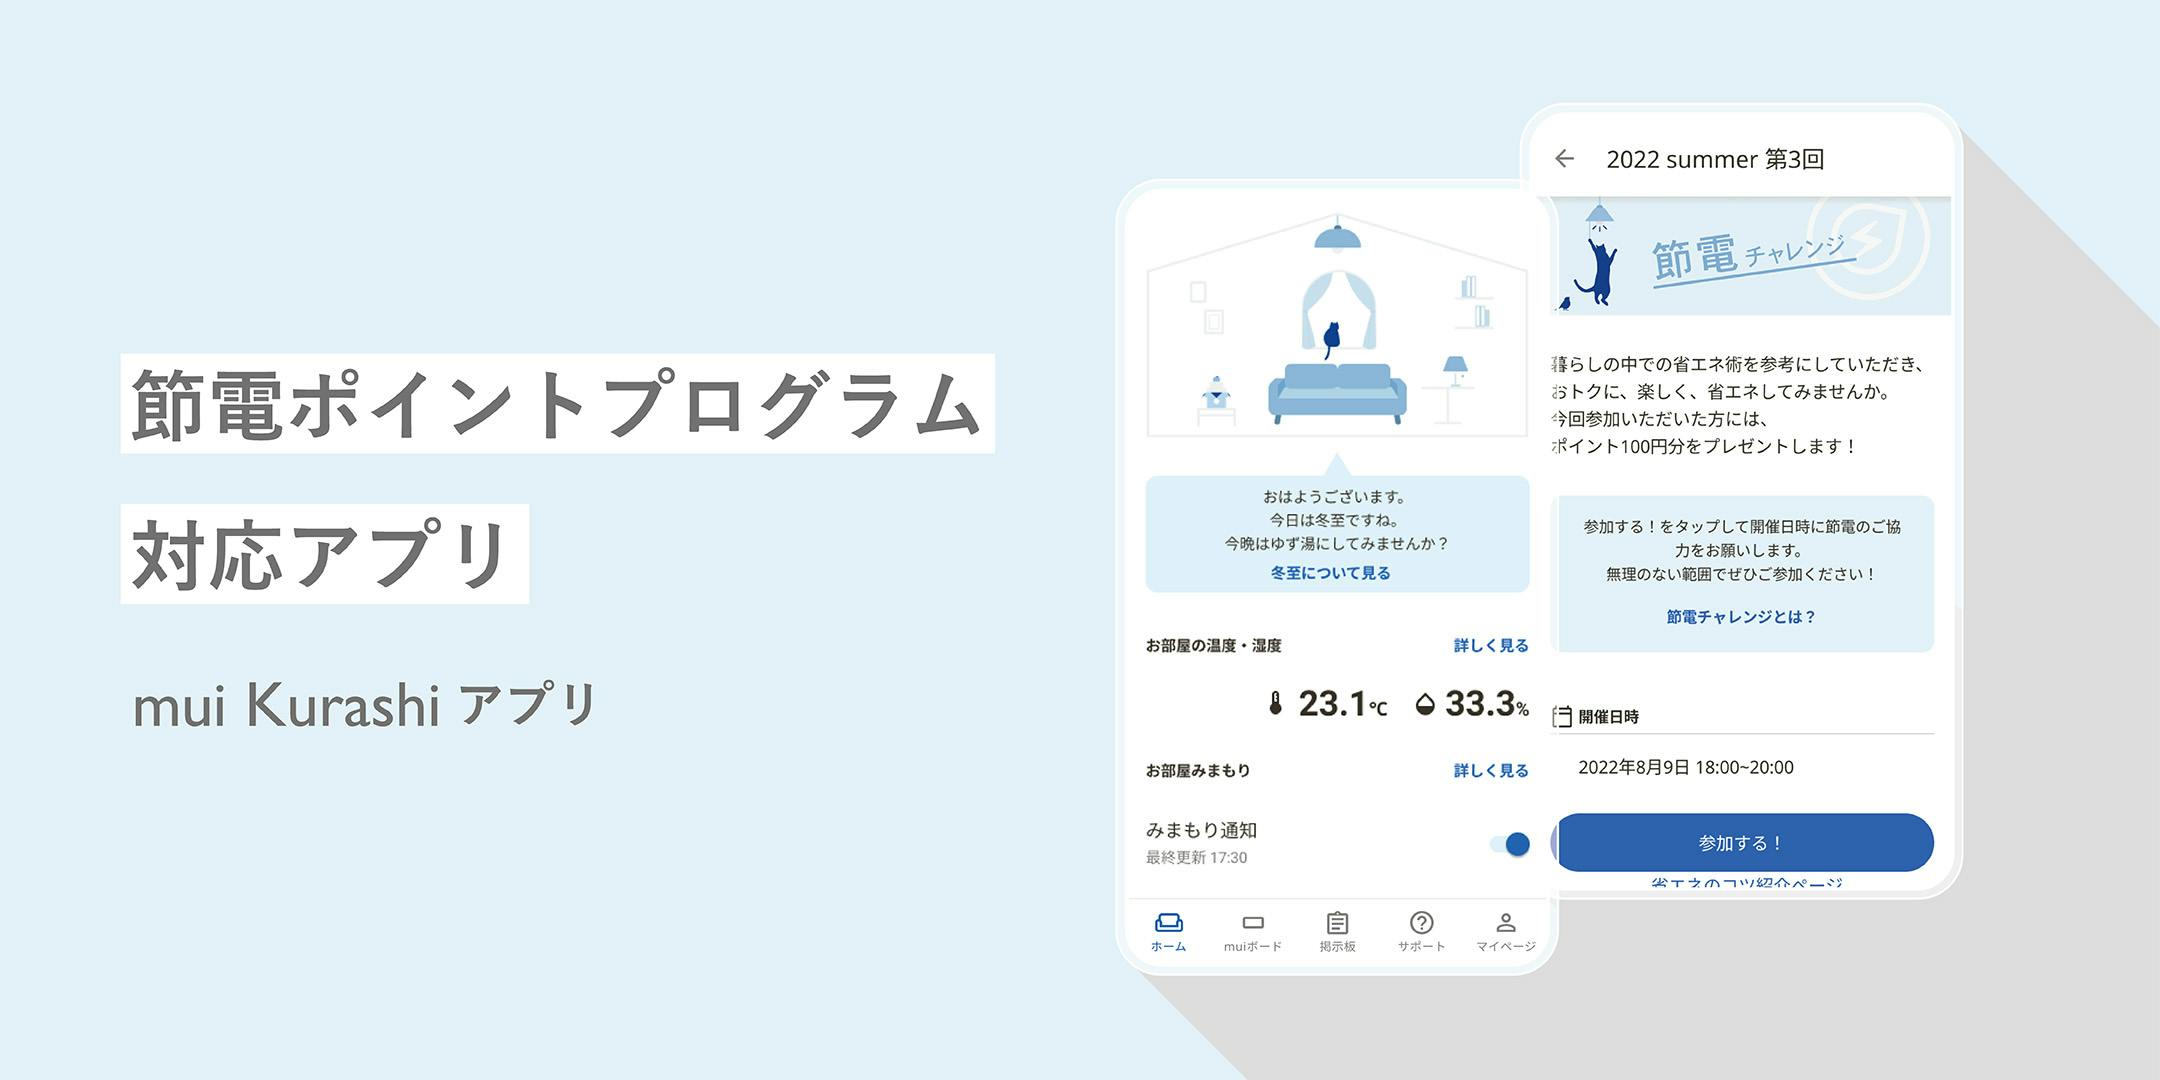 (株) ギフティと連携し「節電ポイント」プログラム対応アプリ「mui Kurashiアプリ」の提供を開始